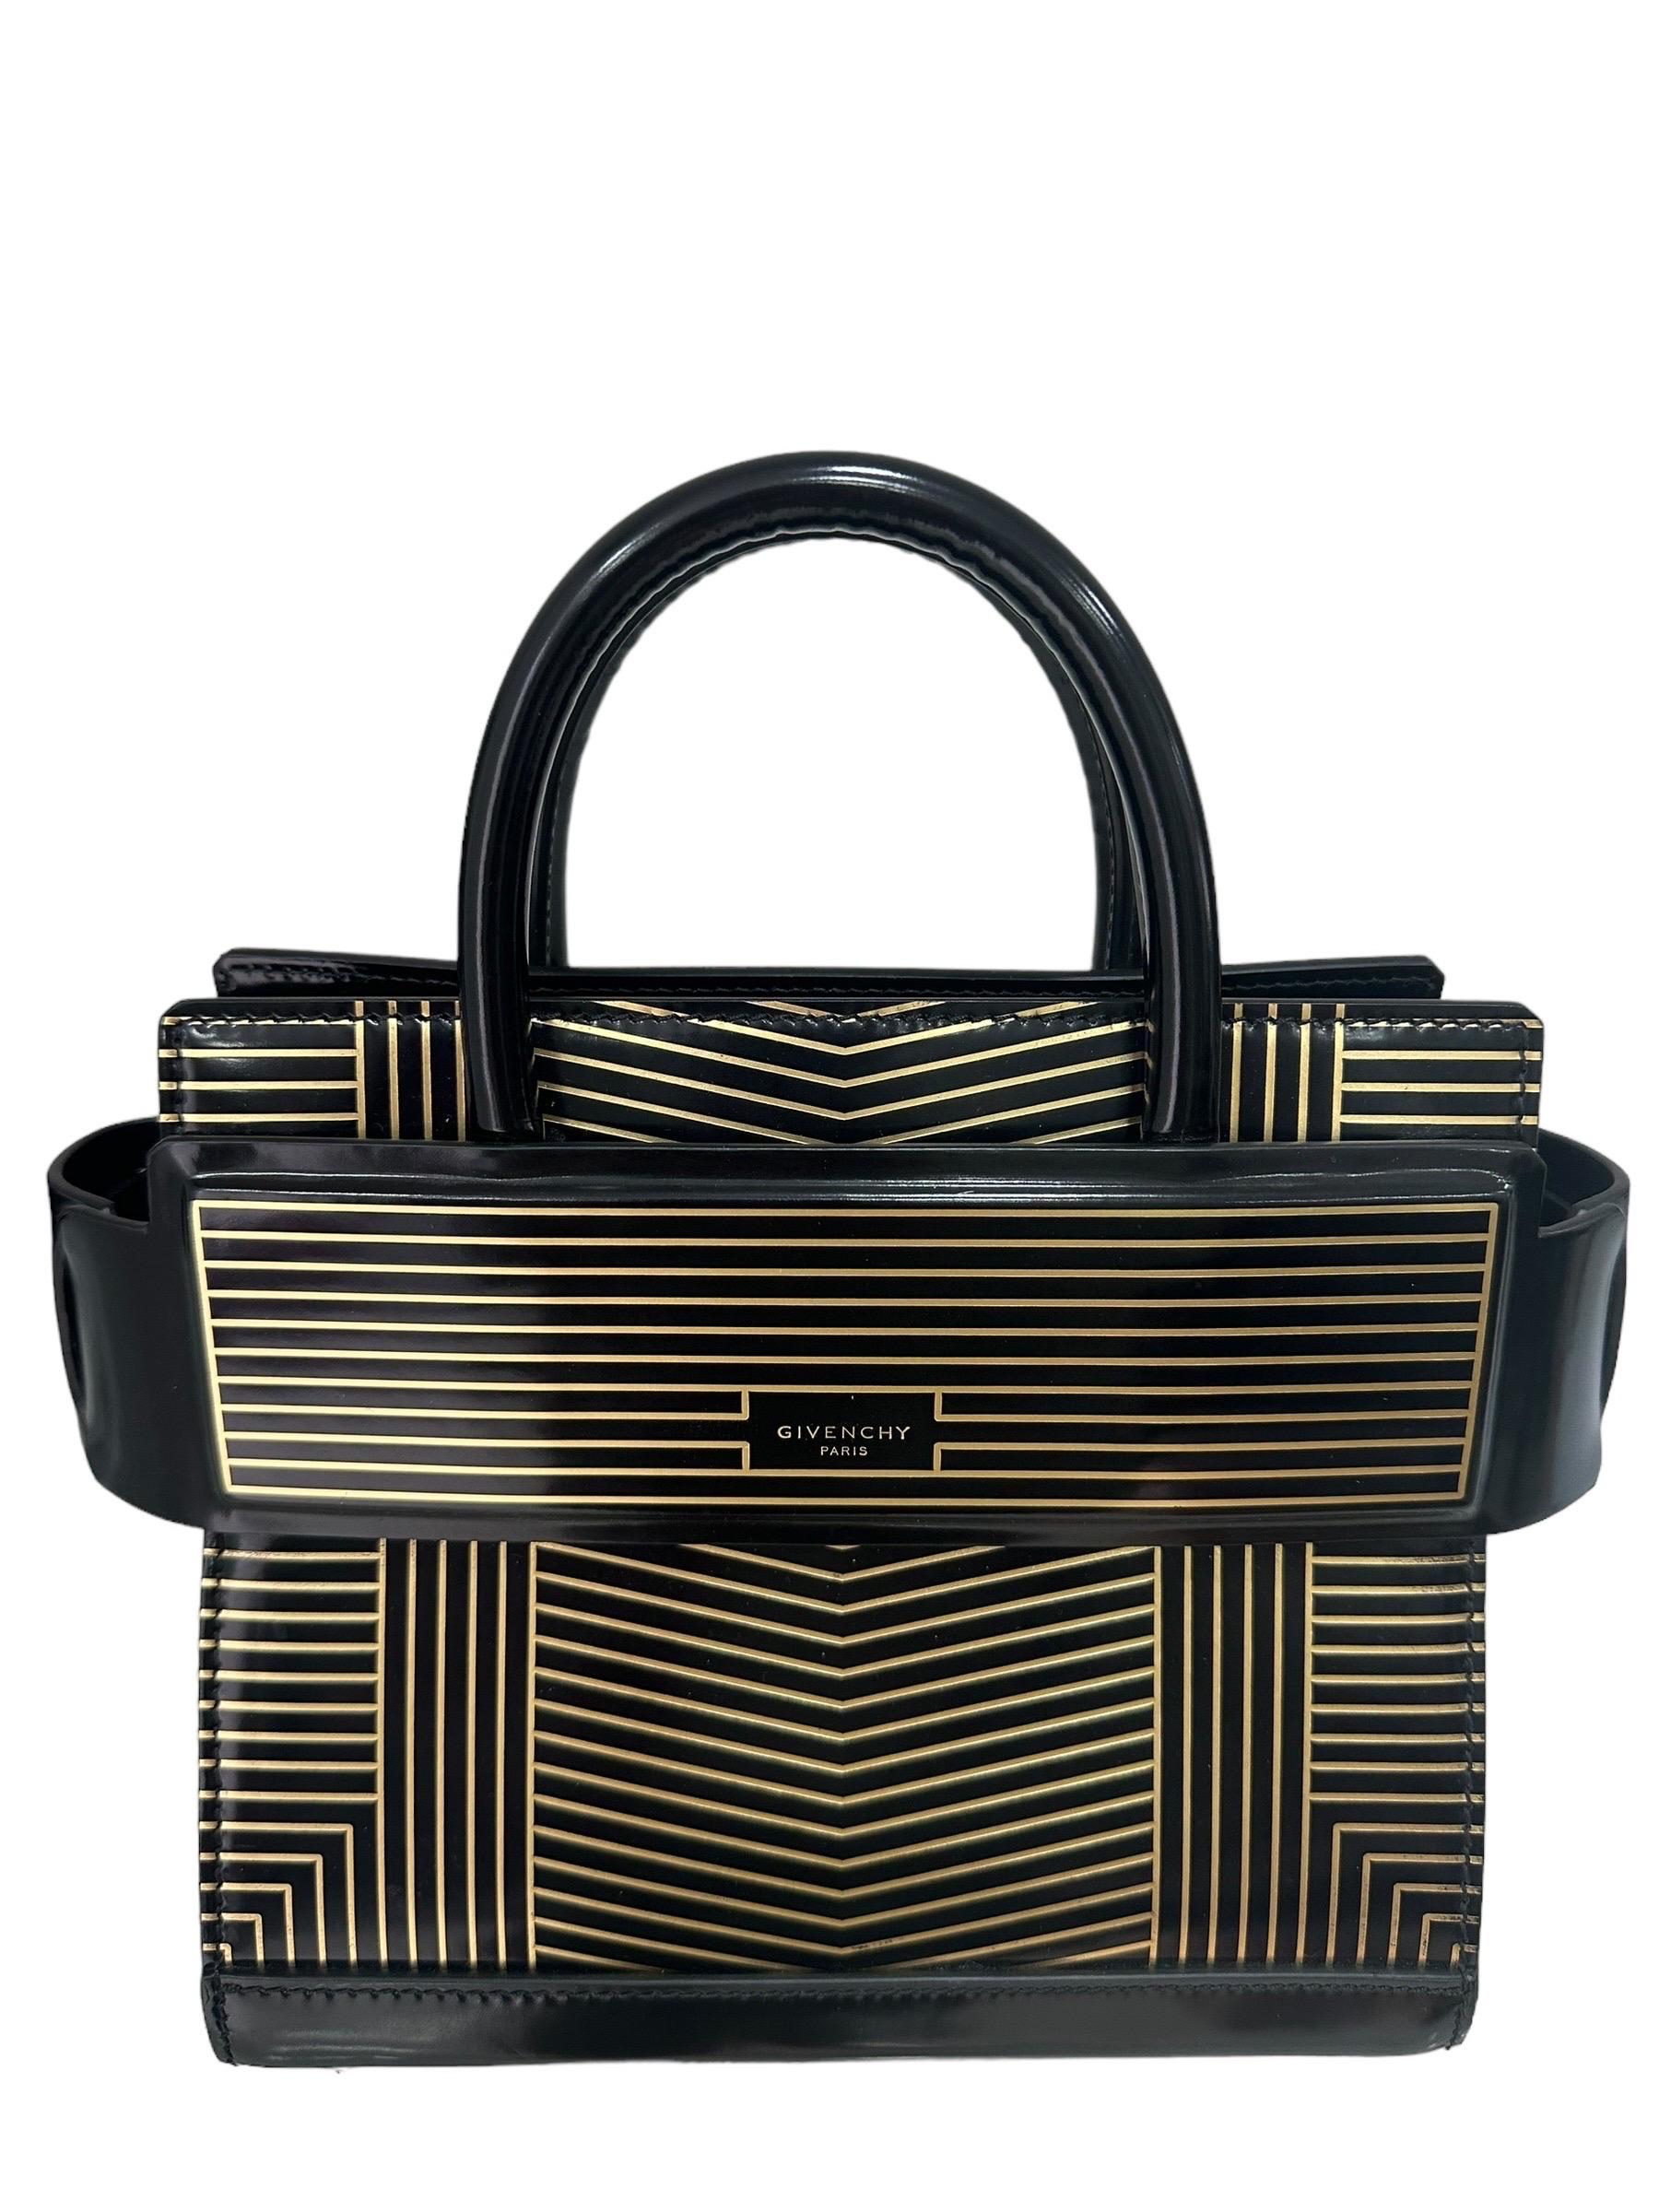 Borsa firmata Givenchy, modello Horizon, realizzata in pelle verniciata nera con fantasia a righe oro con hardware dorati. Non è dotata di alcun tipo di chiusura, internamente rivestita in pelle nera, capiente per l’essenziale. Munita di doppio